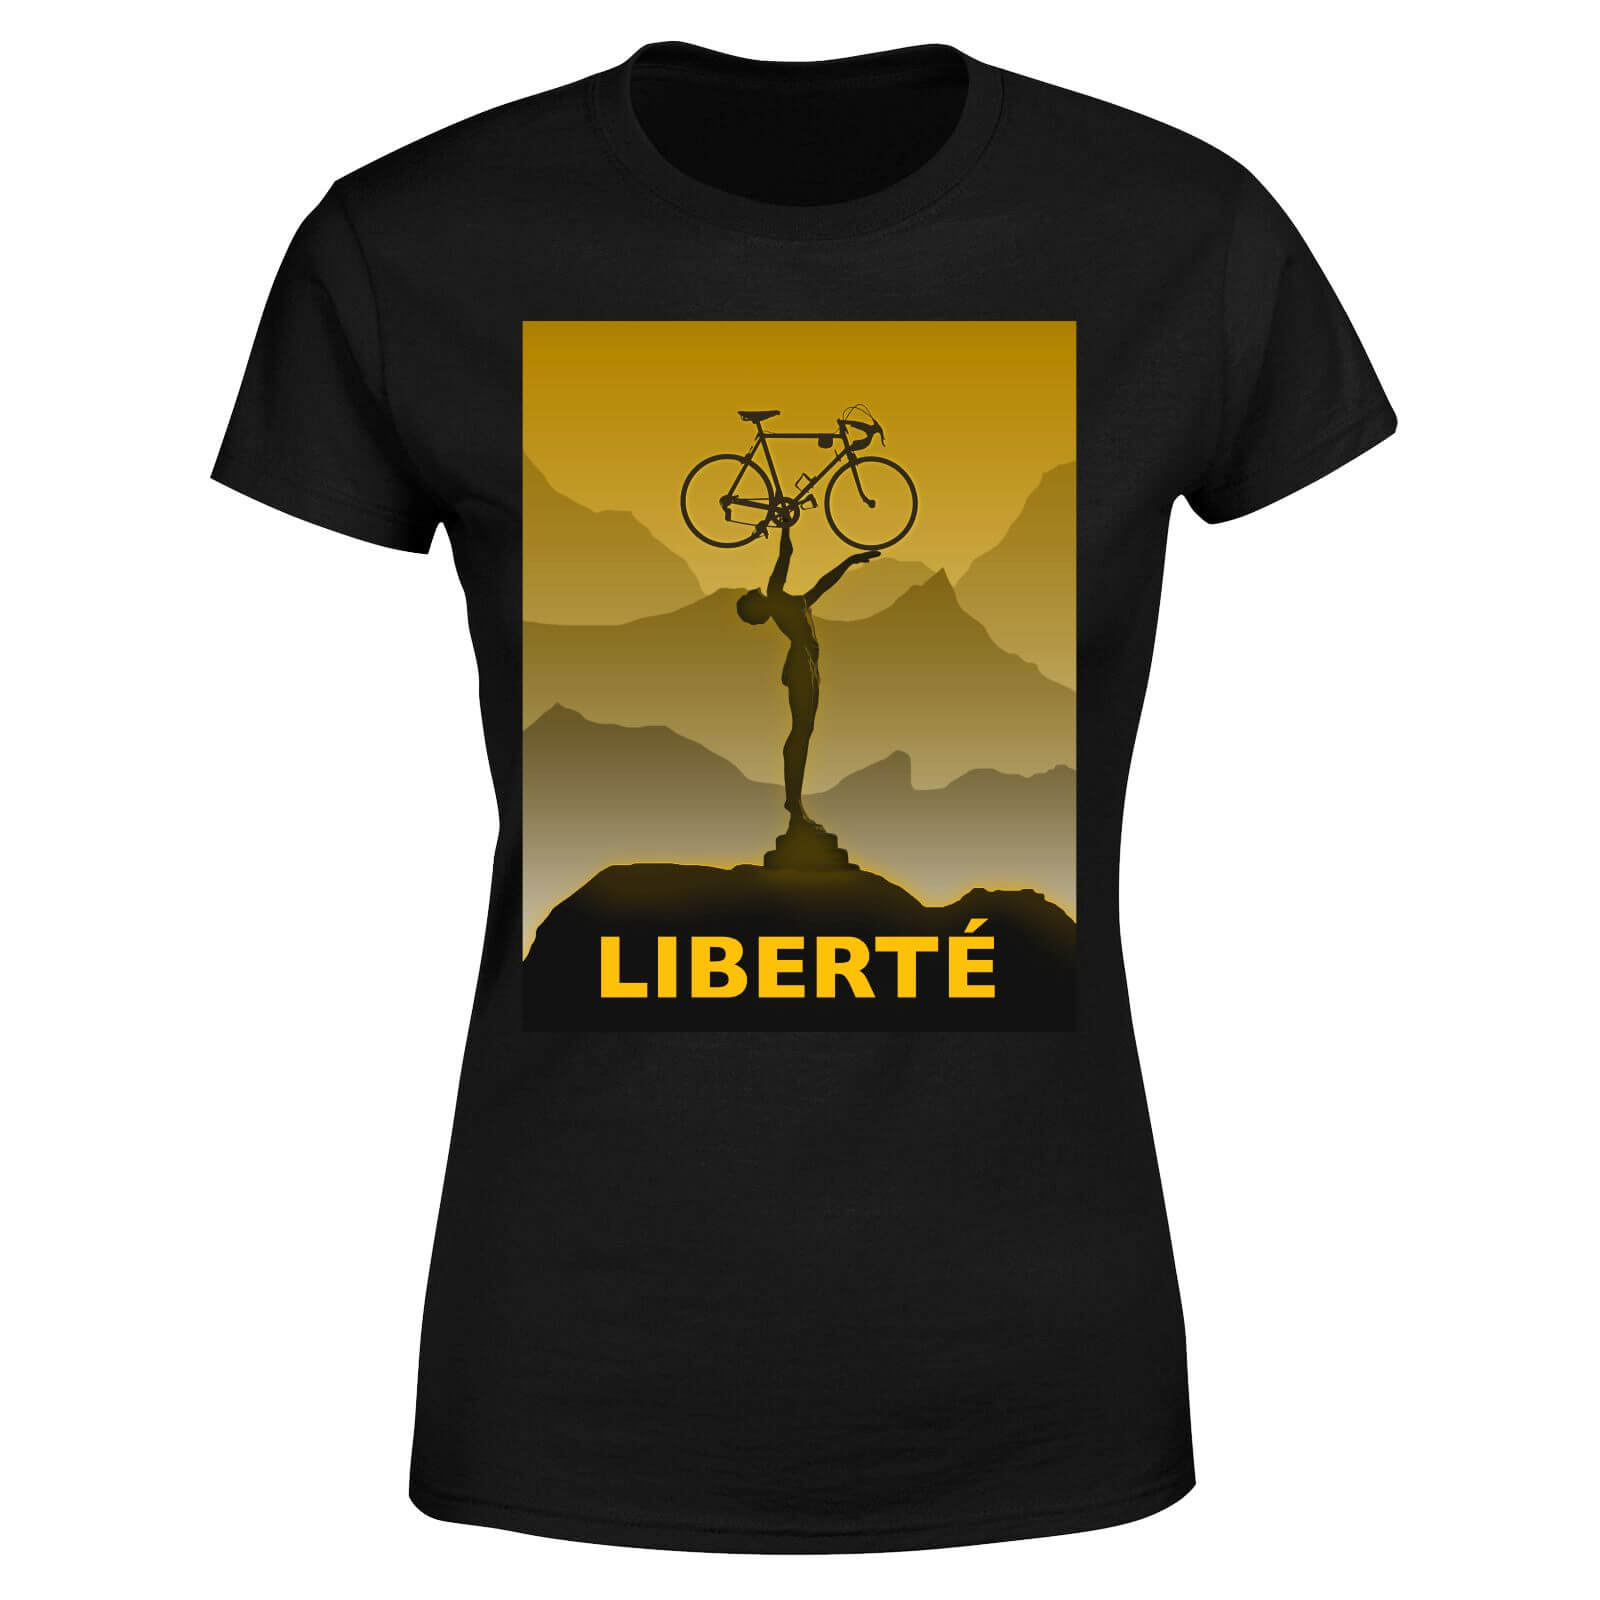 Liberte Women's T-Shirt - Black - L - Black